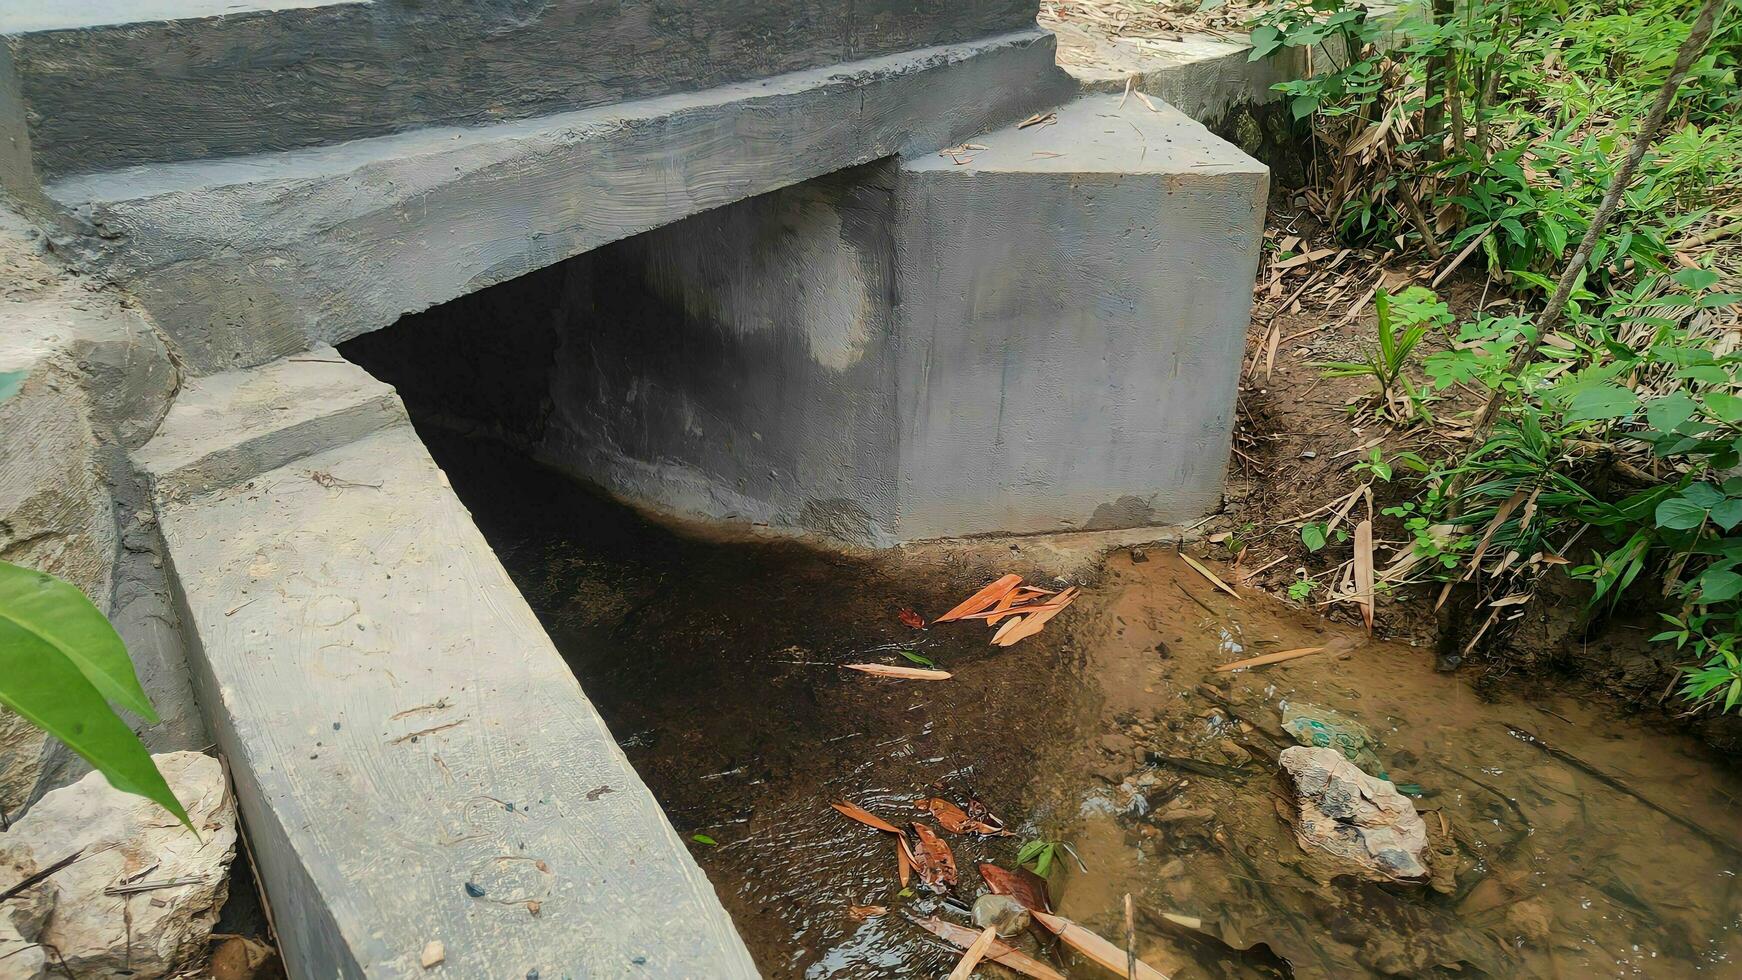 visível debaixo a parede ponte dentro a rio irrigação canal foto